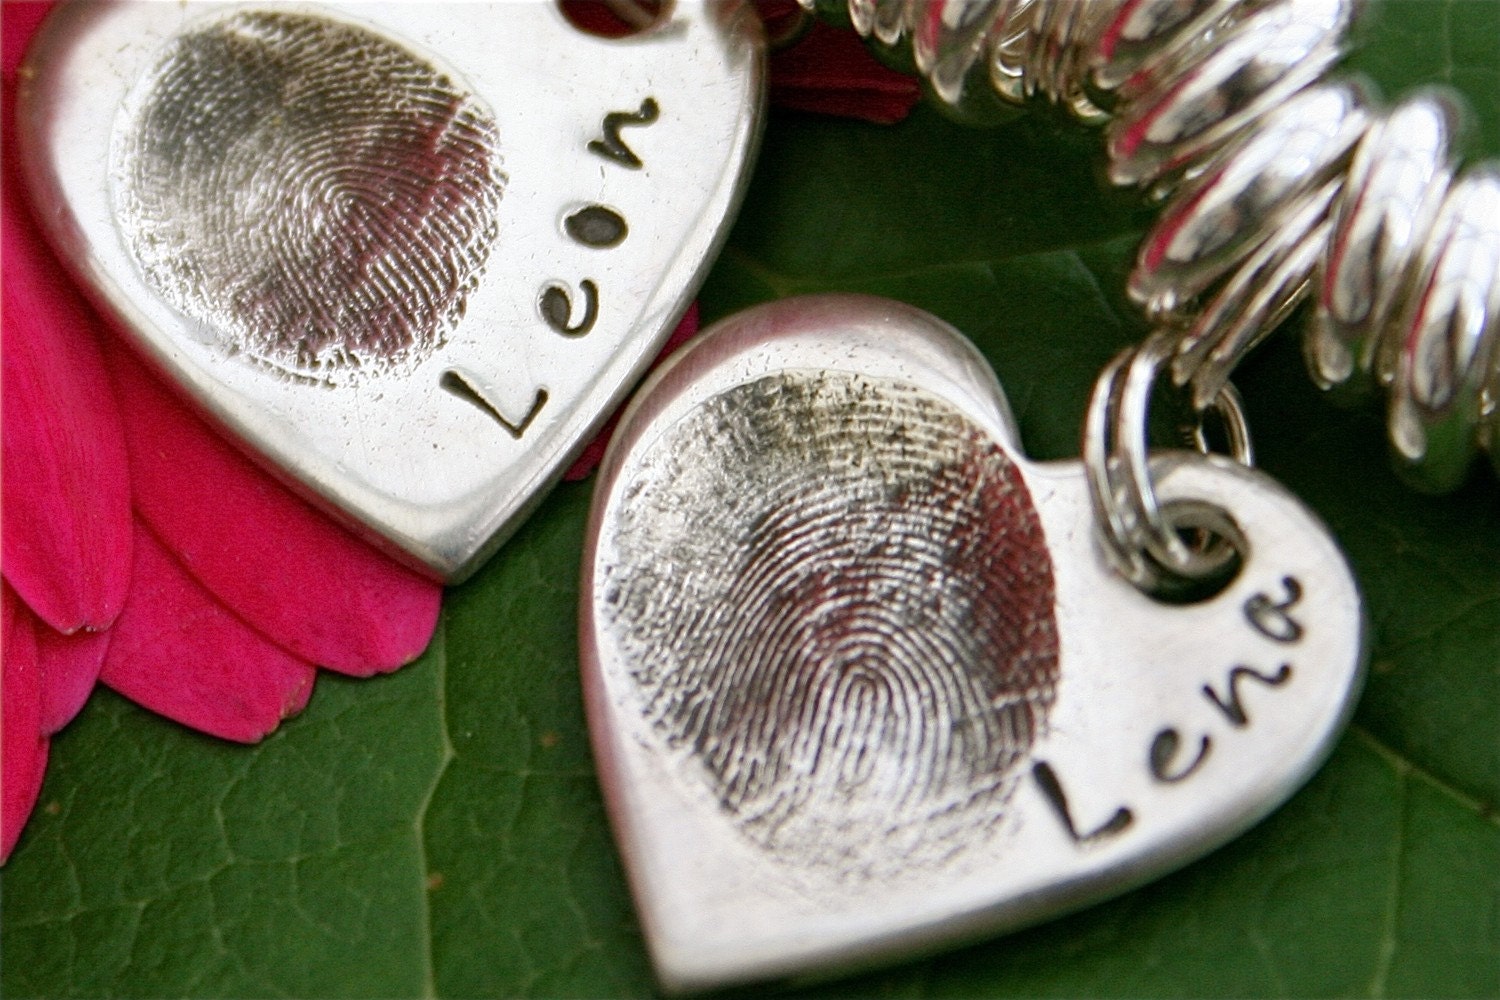 Fingerprint Charm small - your loved ones fingerprint in finesilver